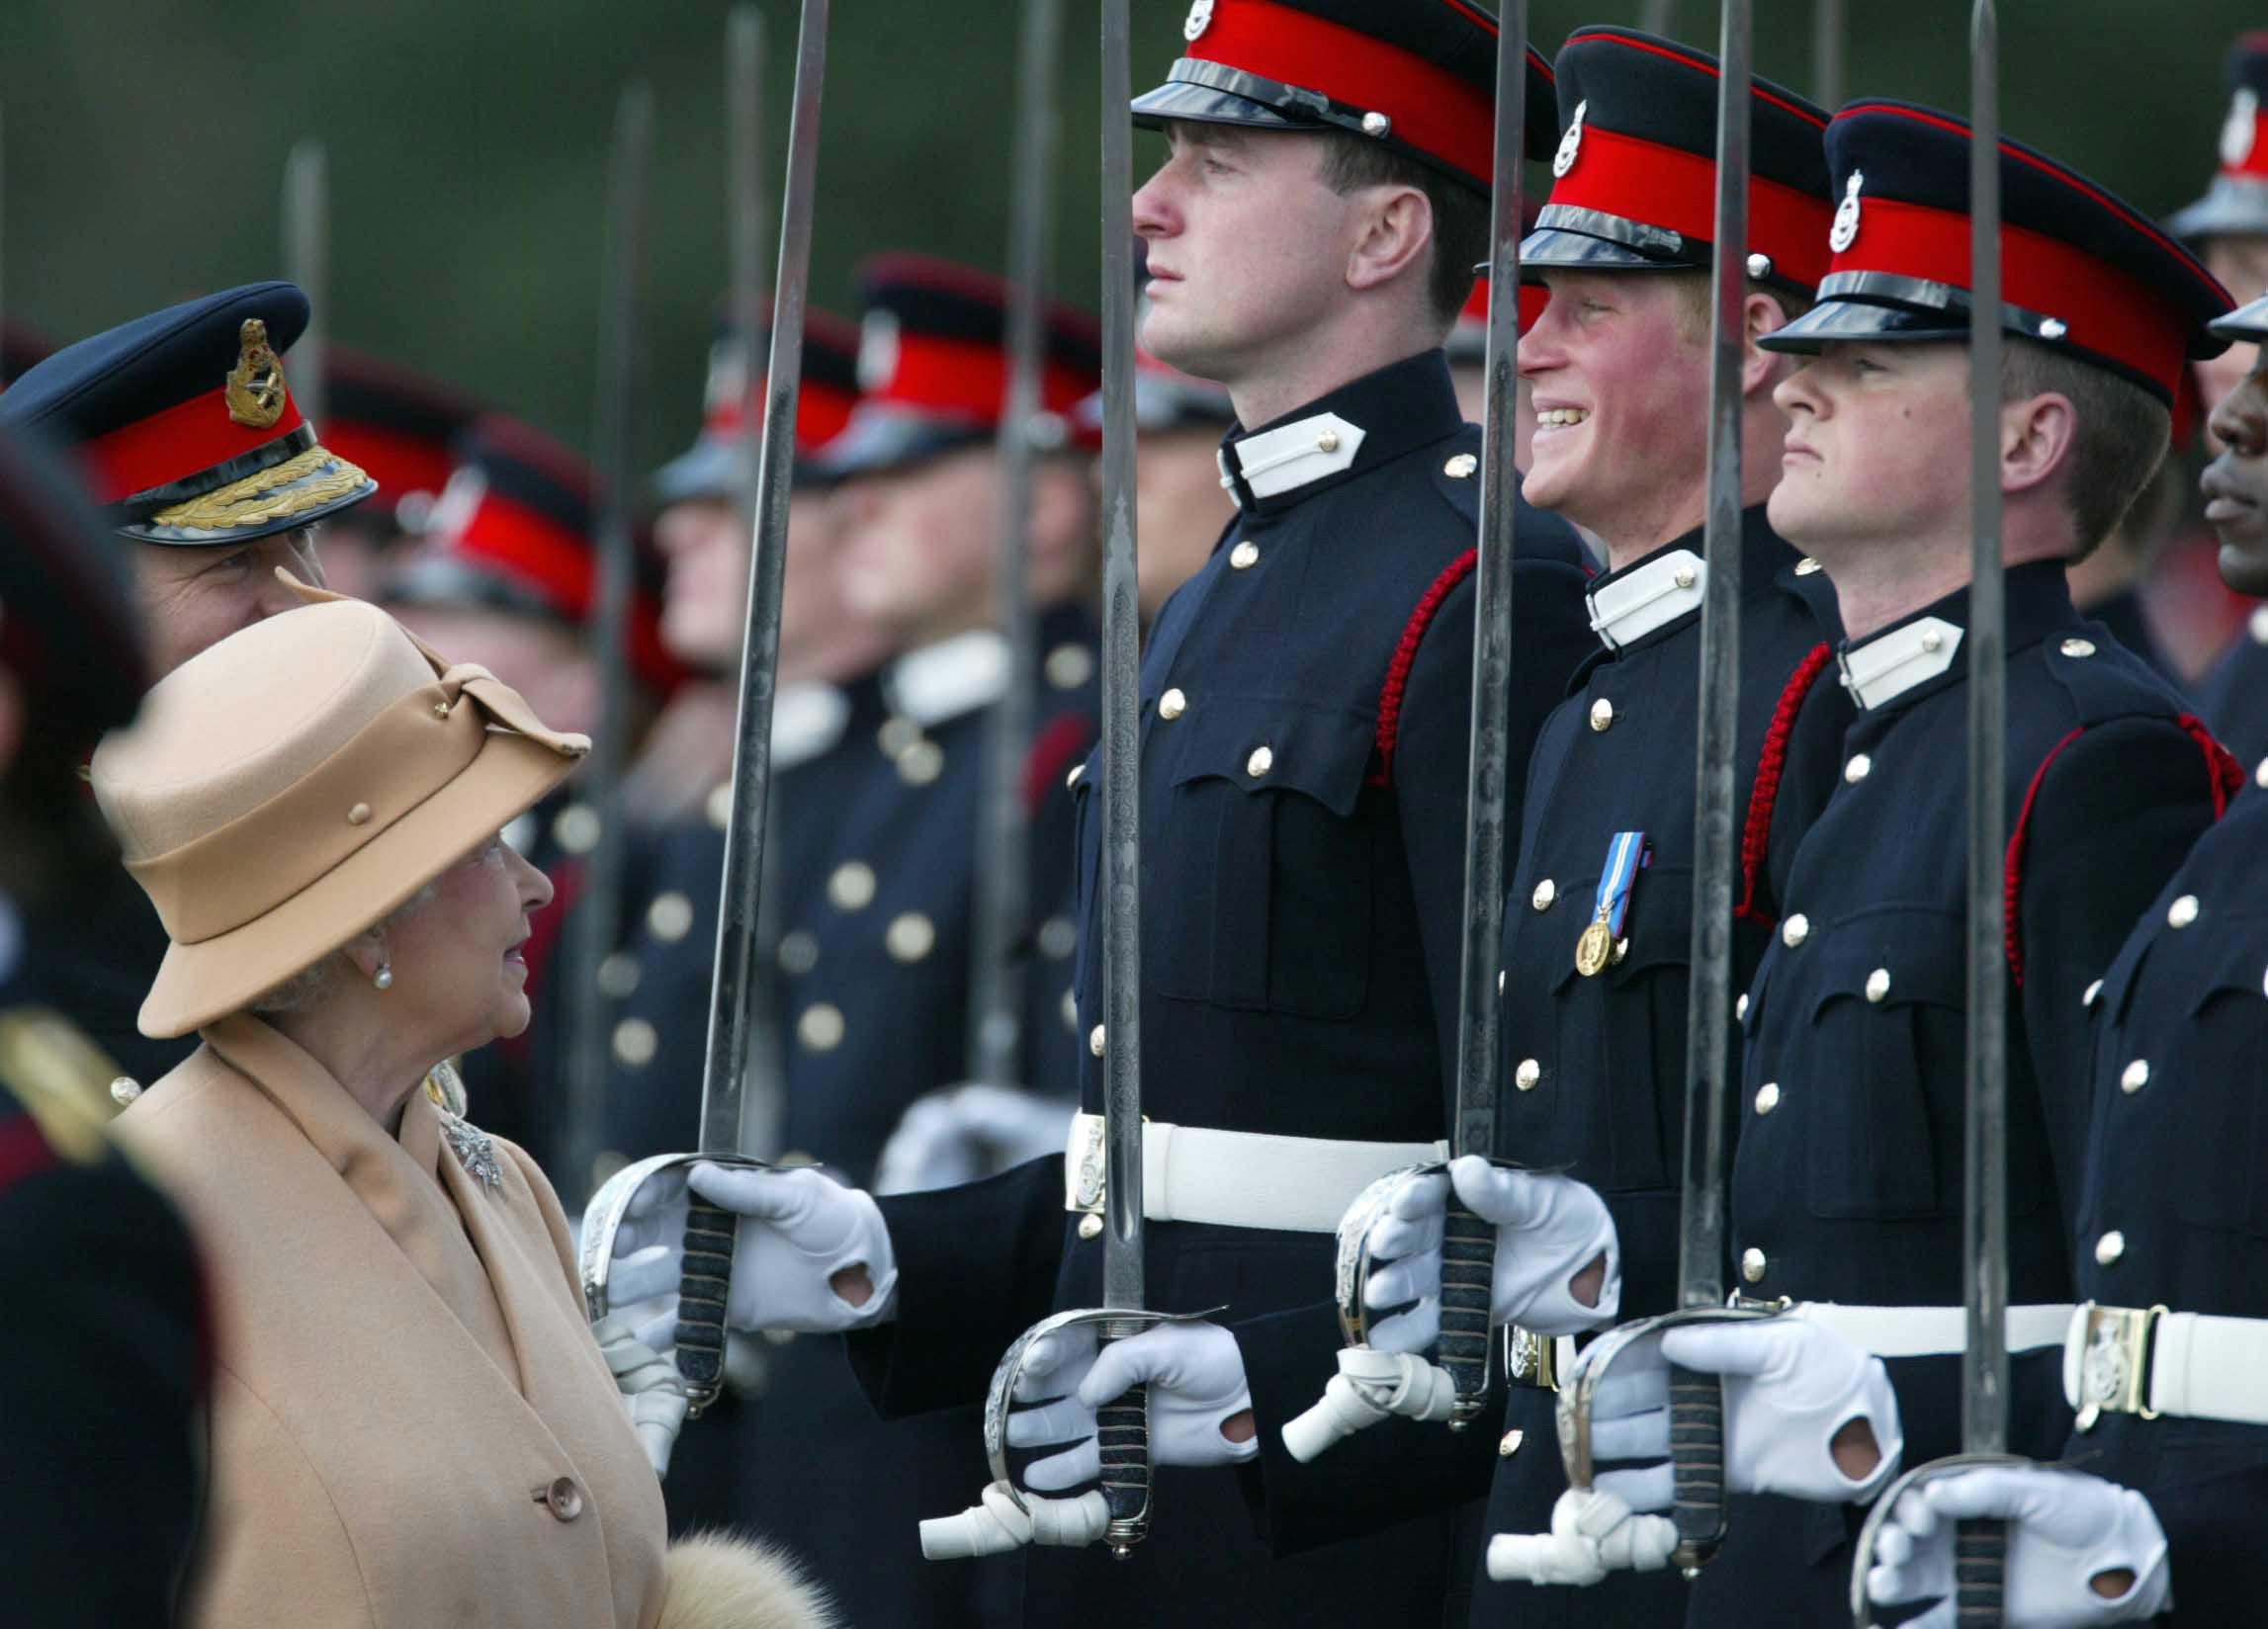 Harry con una. gran sonrisa mientras su abuela la reina Isabel II les pasa revista a él y a otros oficiales durante el Desfile del Soberano en Sandhurst en 2006 (James Vellacott/PA)